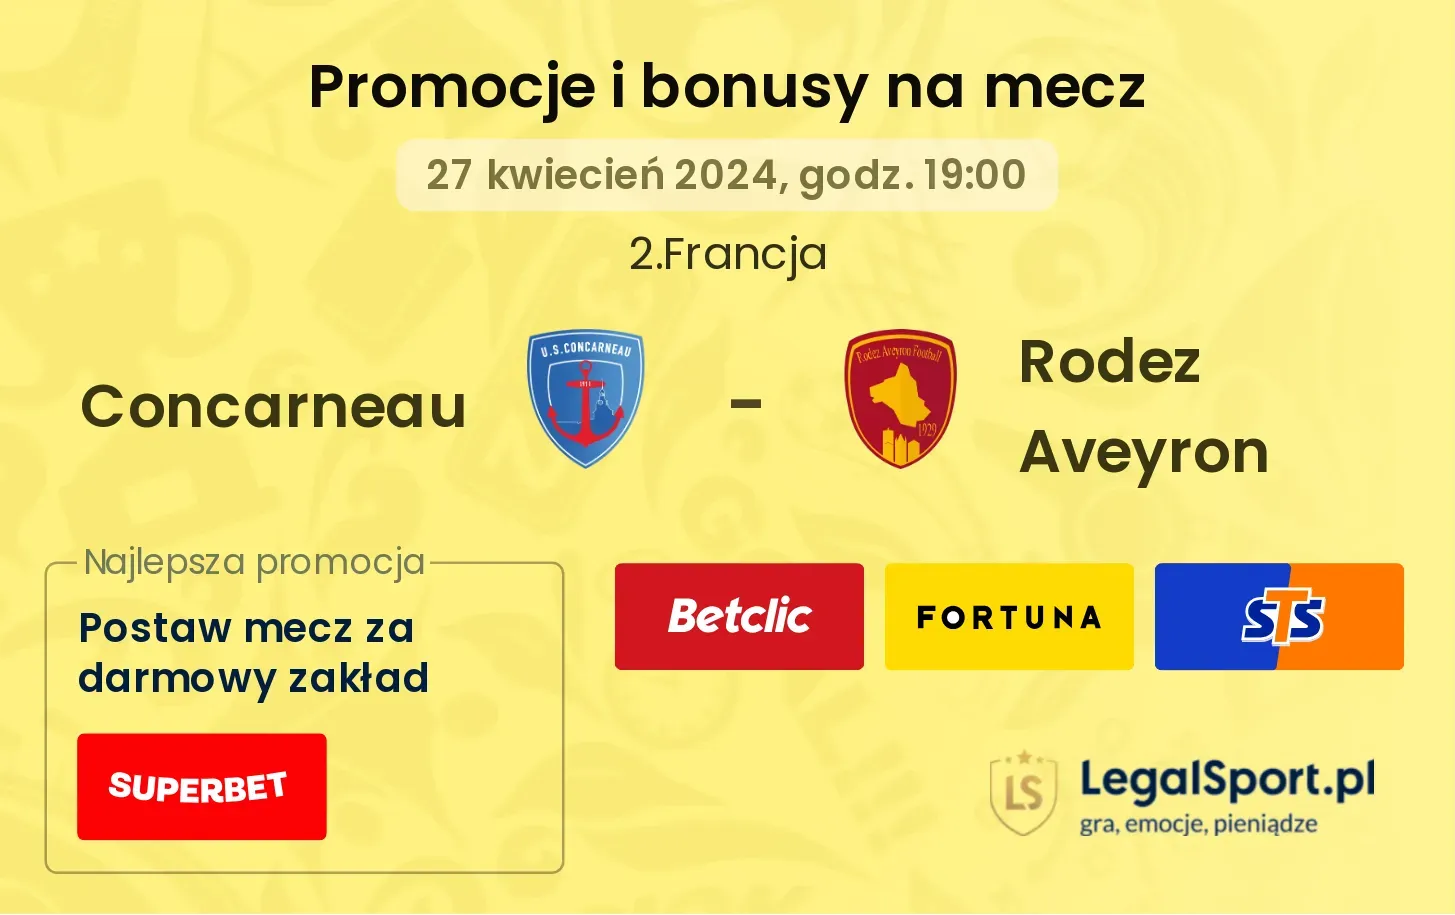 Concarneau - Rodez Aveyron promocje bonusy na mecz